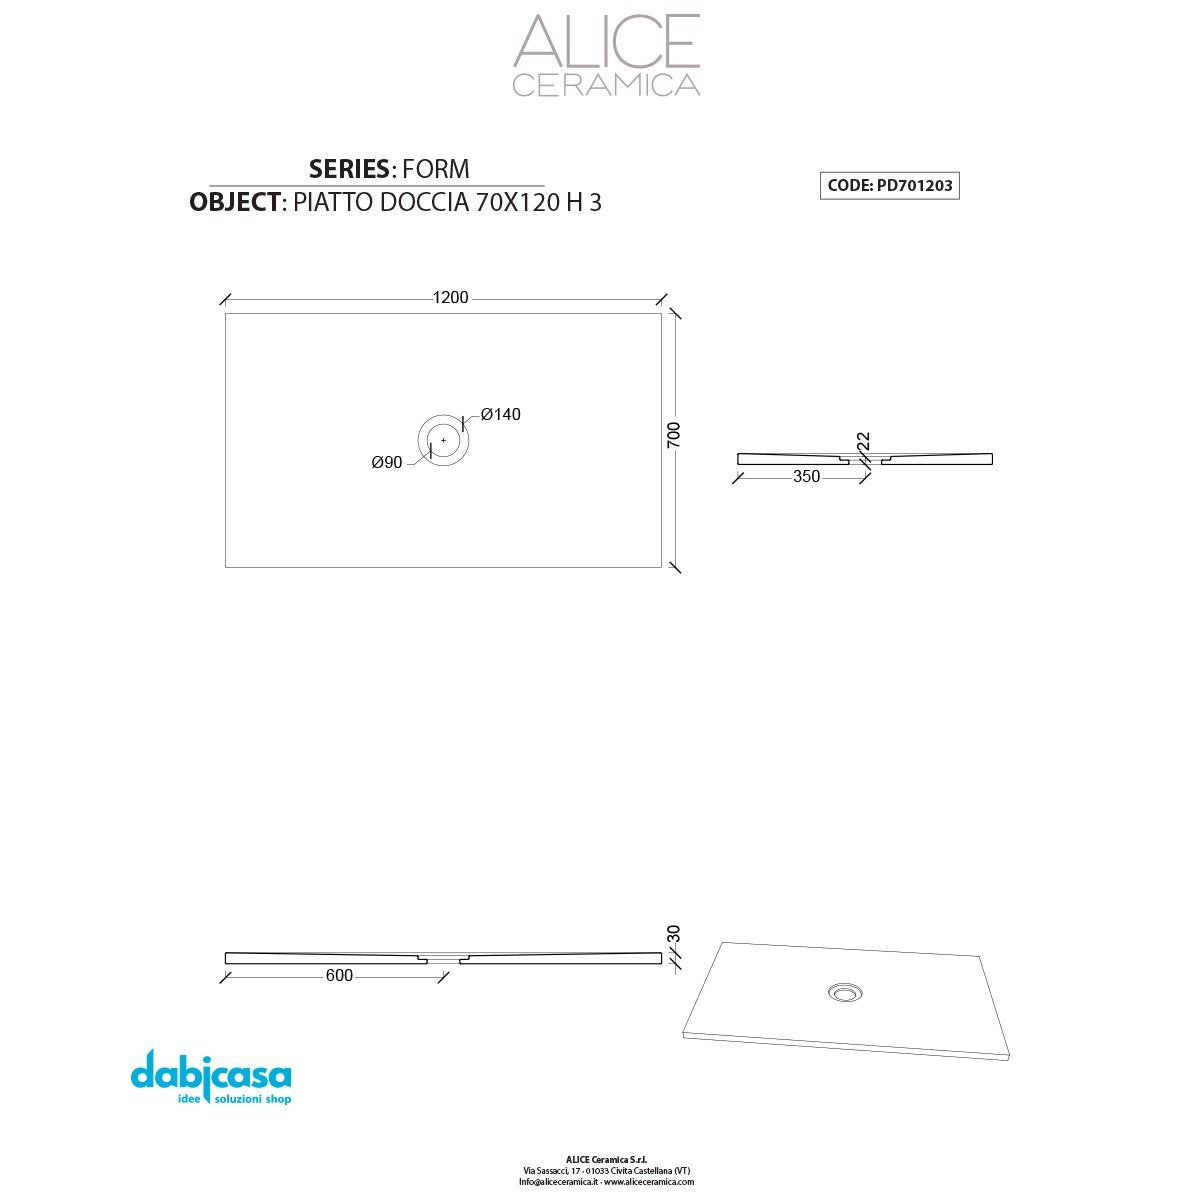 Piatto Doccia Alice Ceramica "Serie Form" 70x120 cm h 3 Colore Nero Opaco freeshipping - Dabicasa